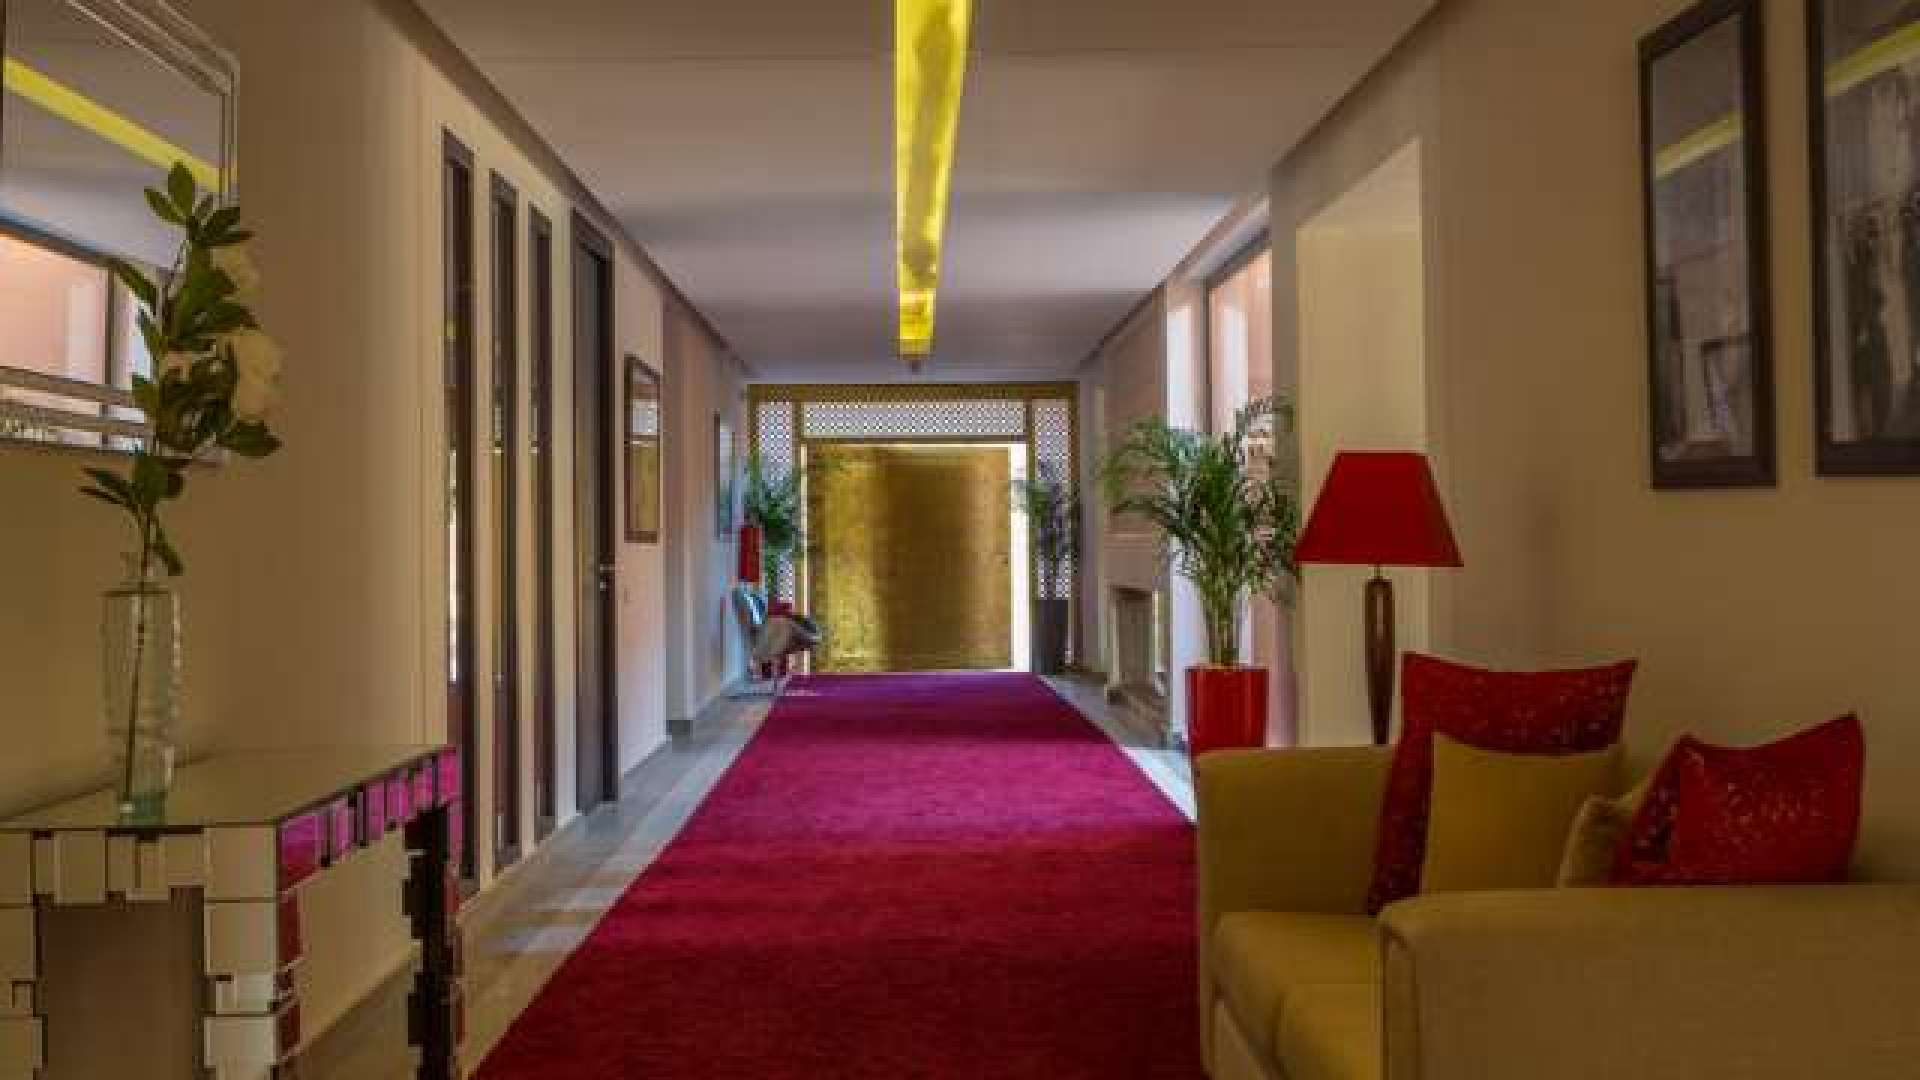 Location de vacances,Palais,Palais d’hôtes Palmeraie Marrakech 11 suites d'exception,Marrakech,Palmeraie